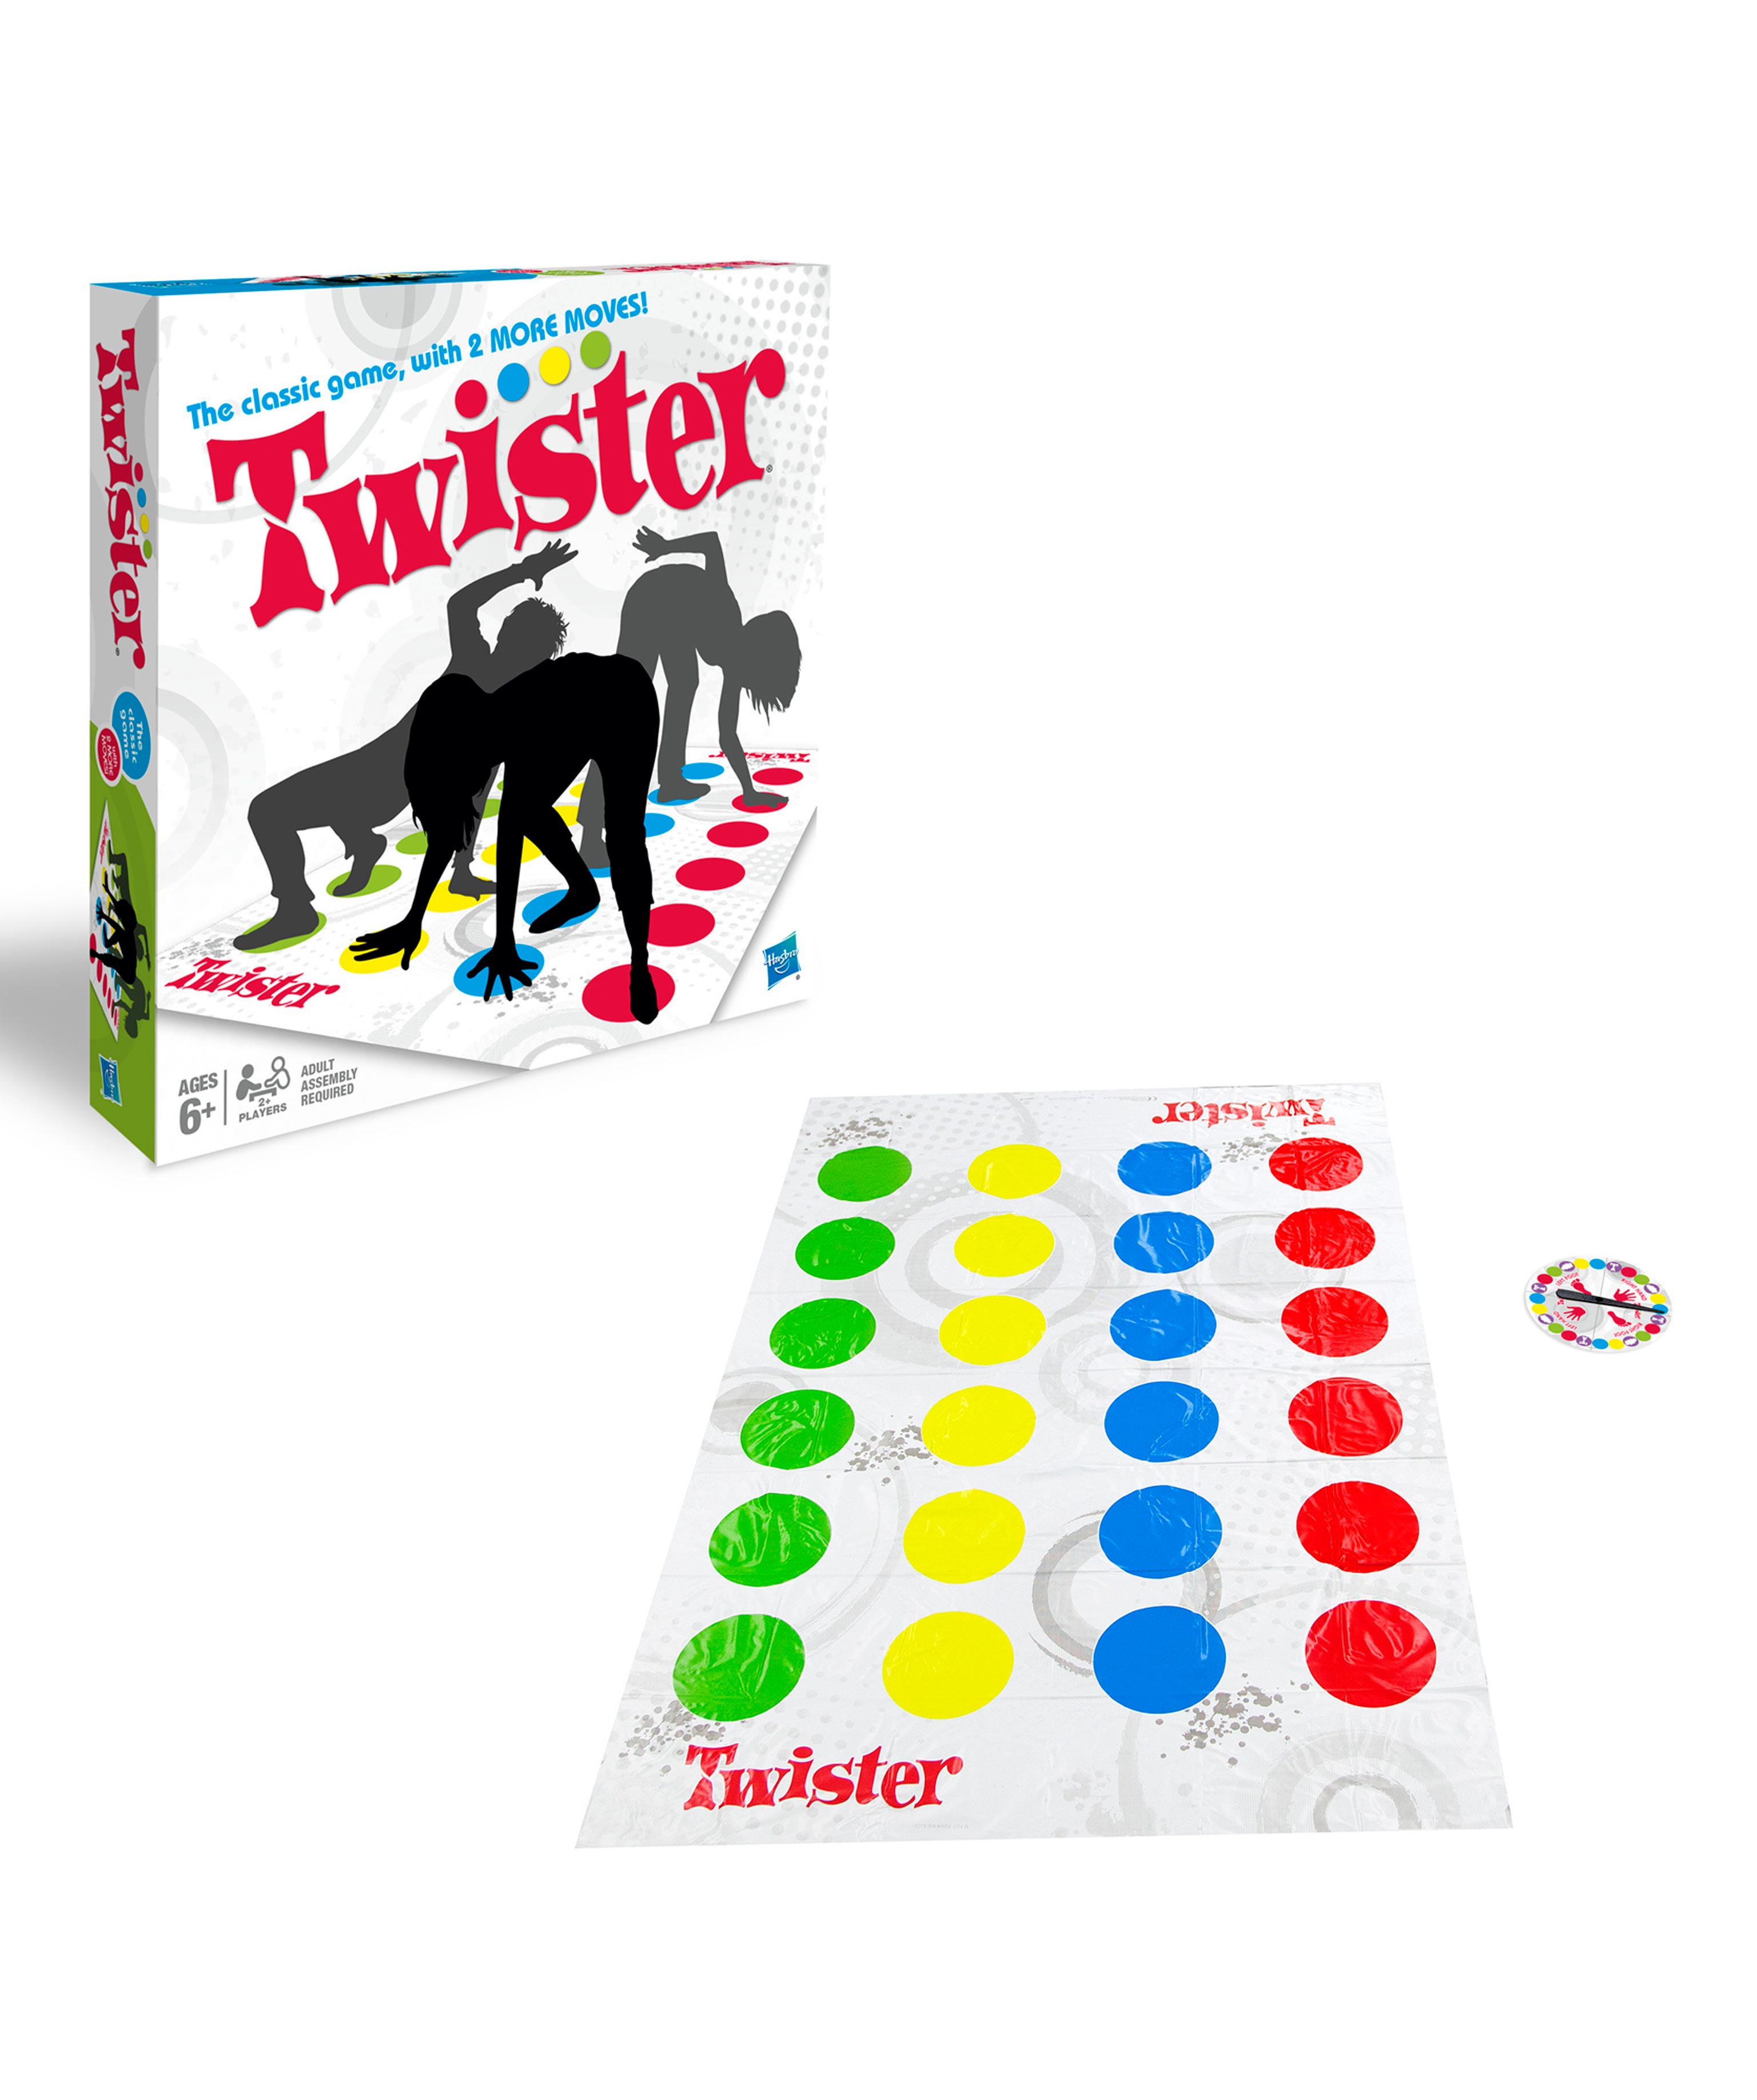 ''Twister'' - Fun game